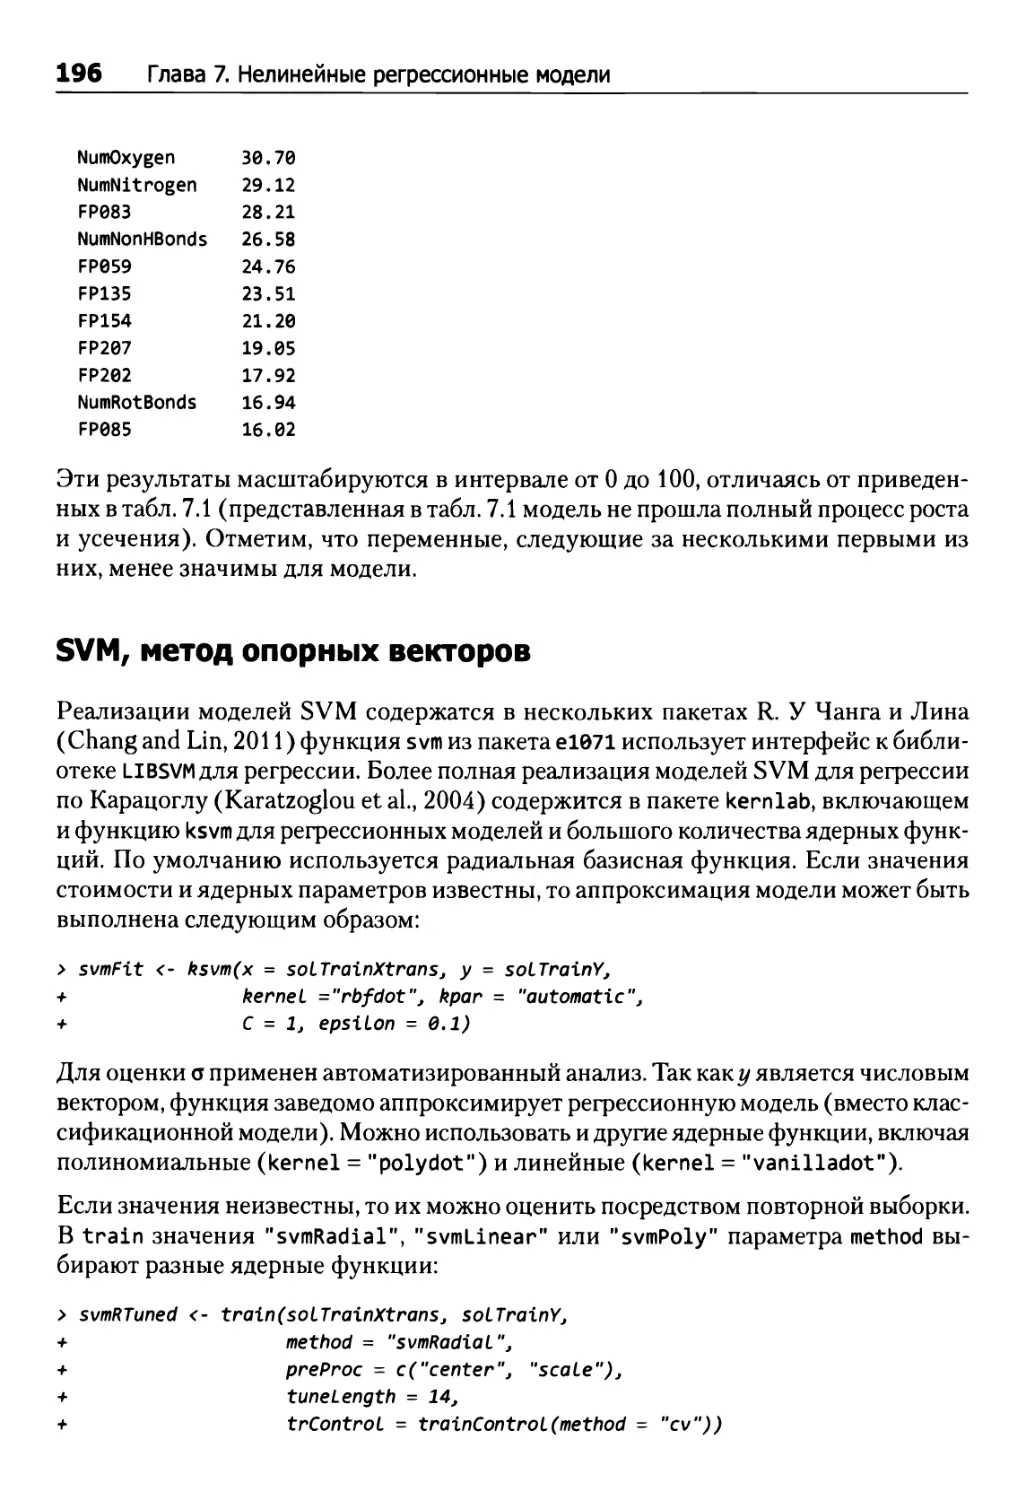 SVM, метод опорных векторов